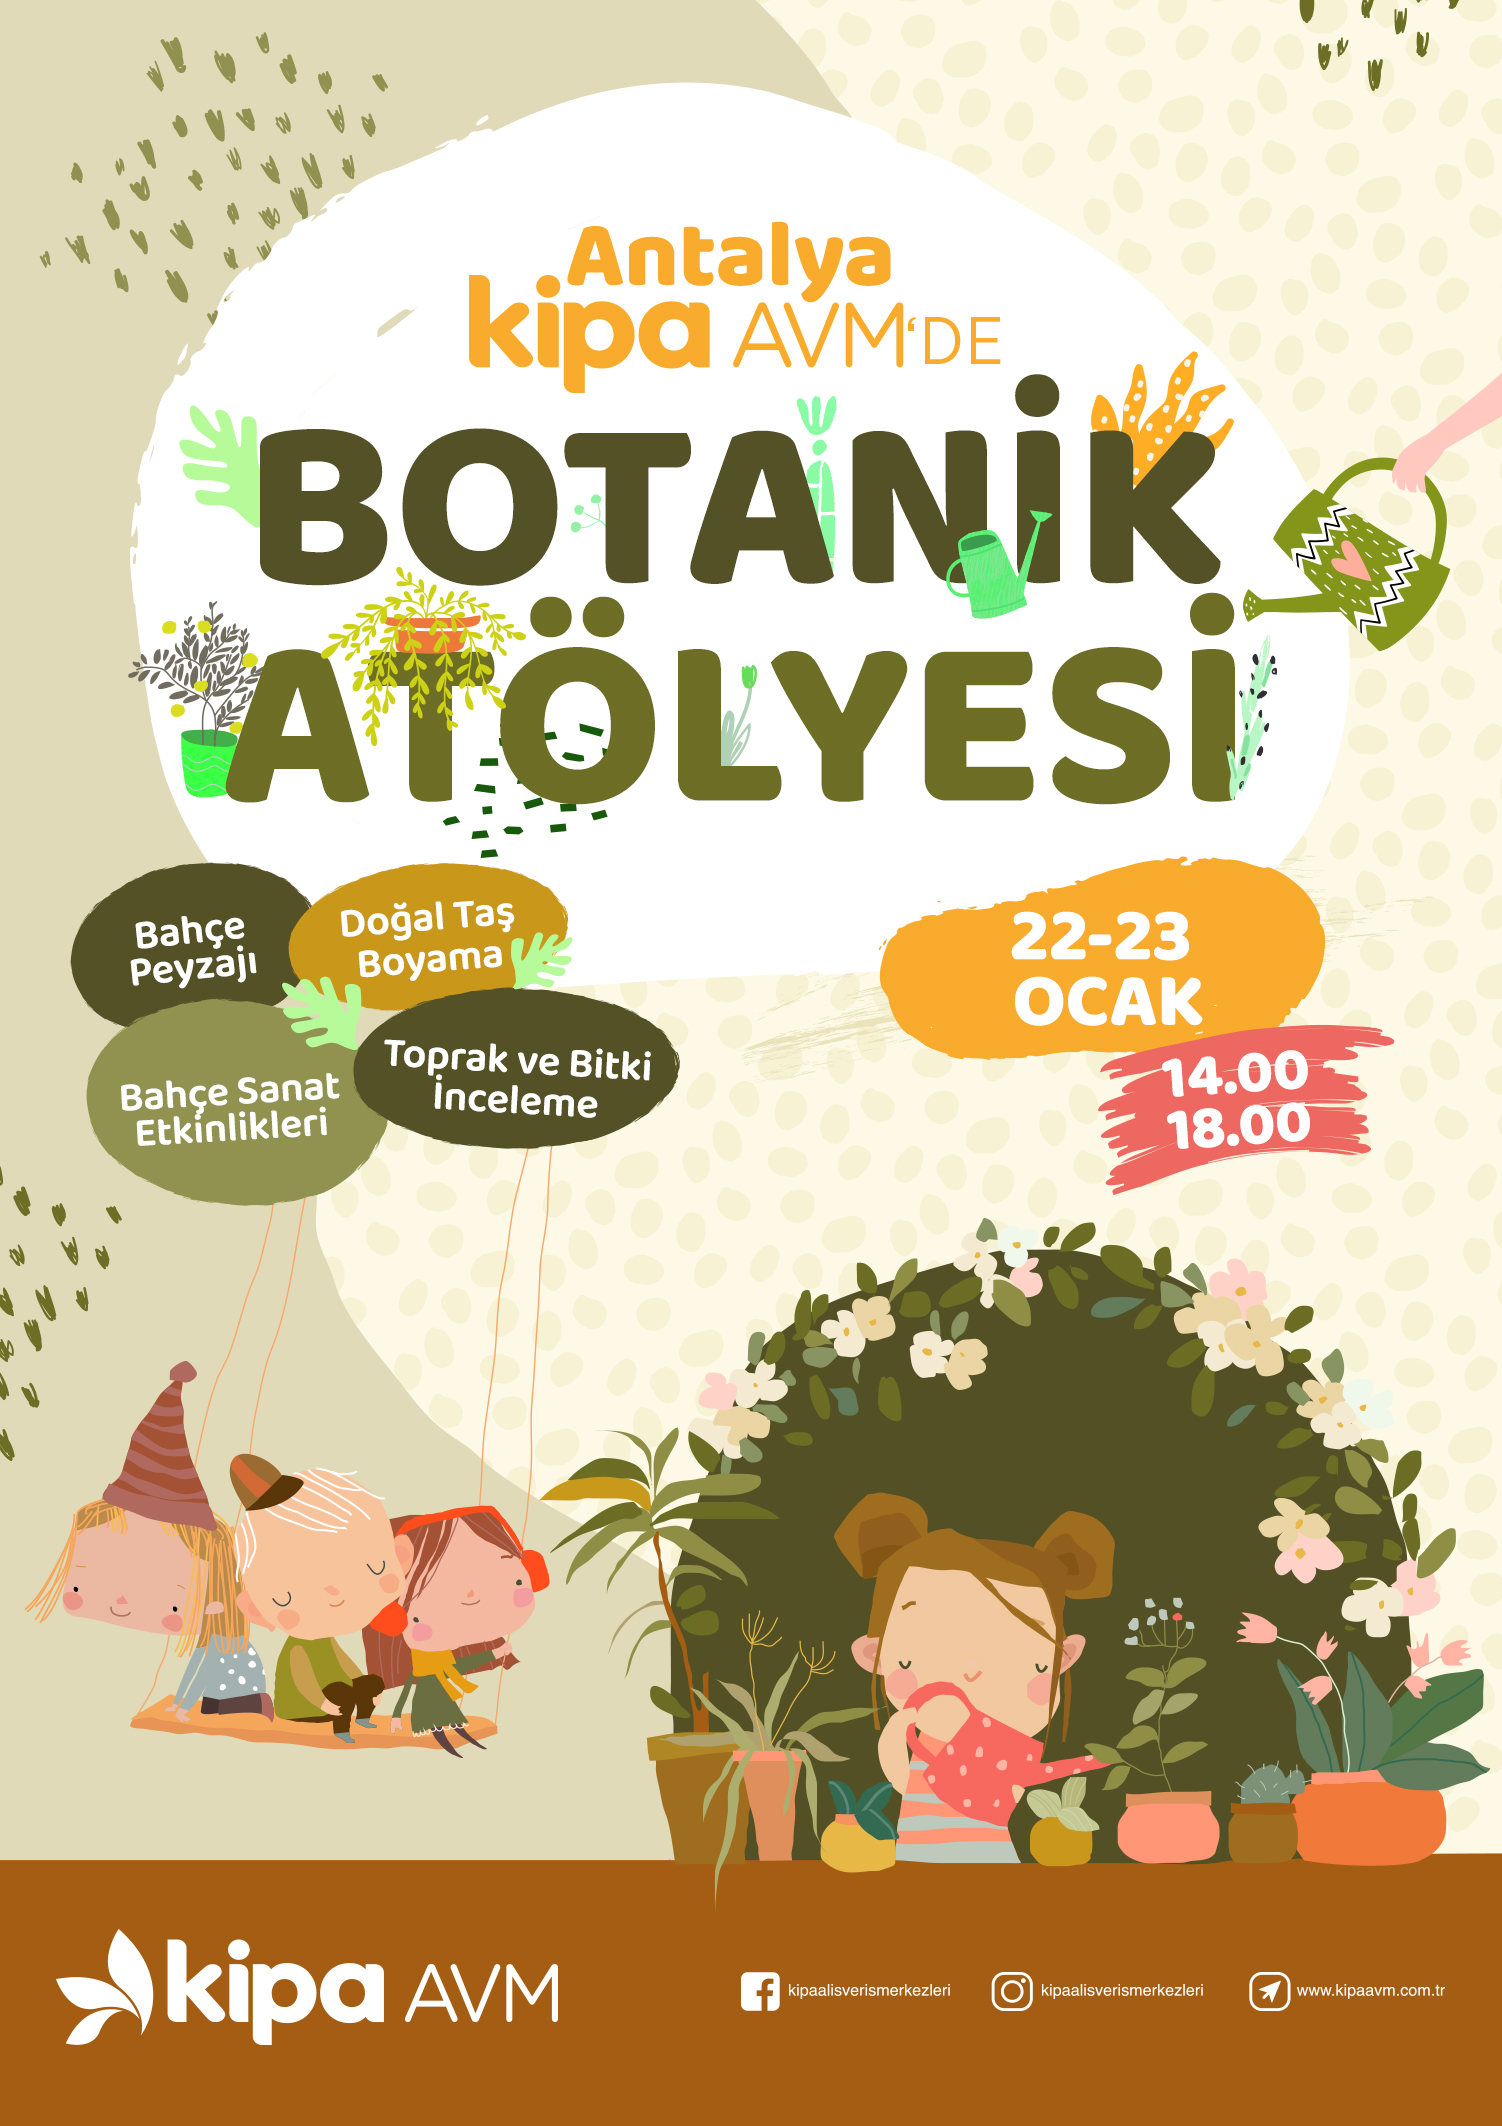 Antalya Kipa AVM'de Botanik Atölyesi!
